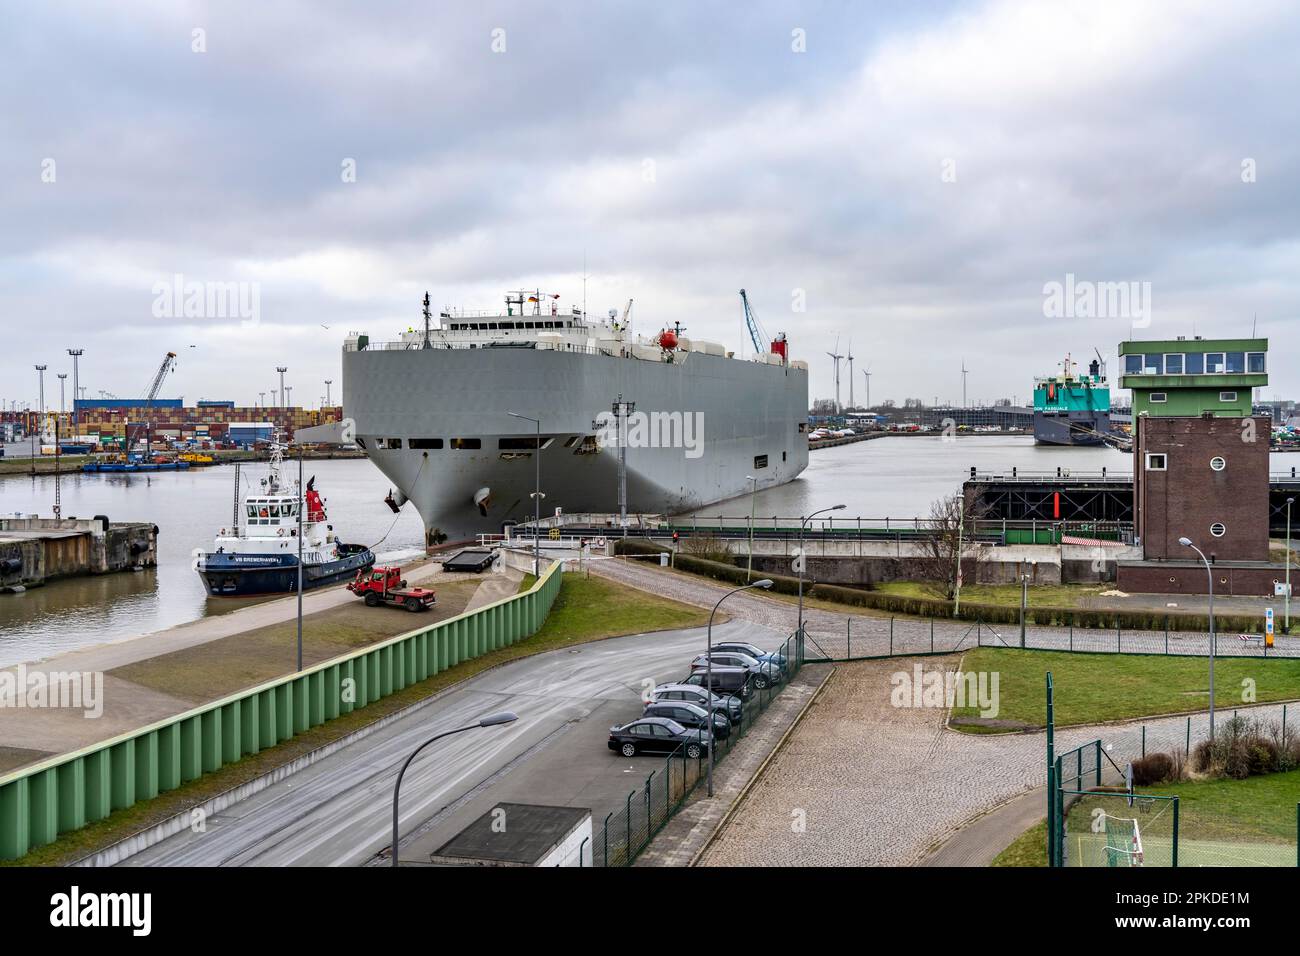 North lock nel porto d'oltremare di Bremerhaven, il veicolo trasportatore Durban Highway, sotto la bandiera di Panama, può caricare circa 600 automobili, scarichi Foto Stock